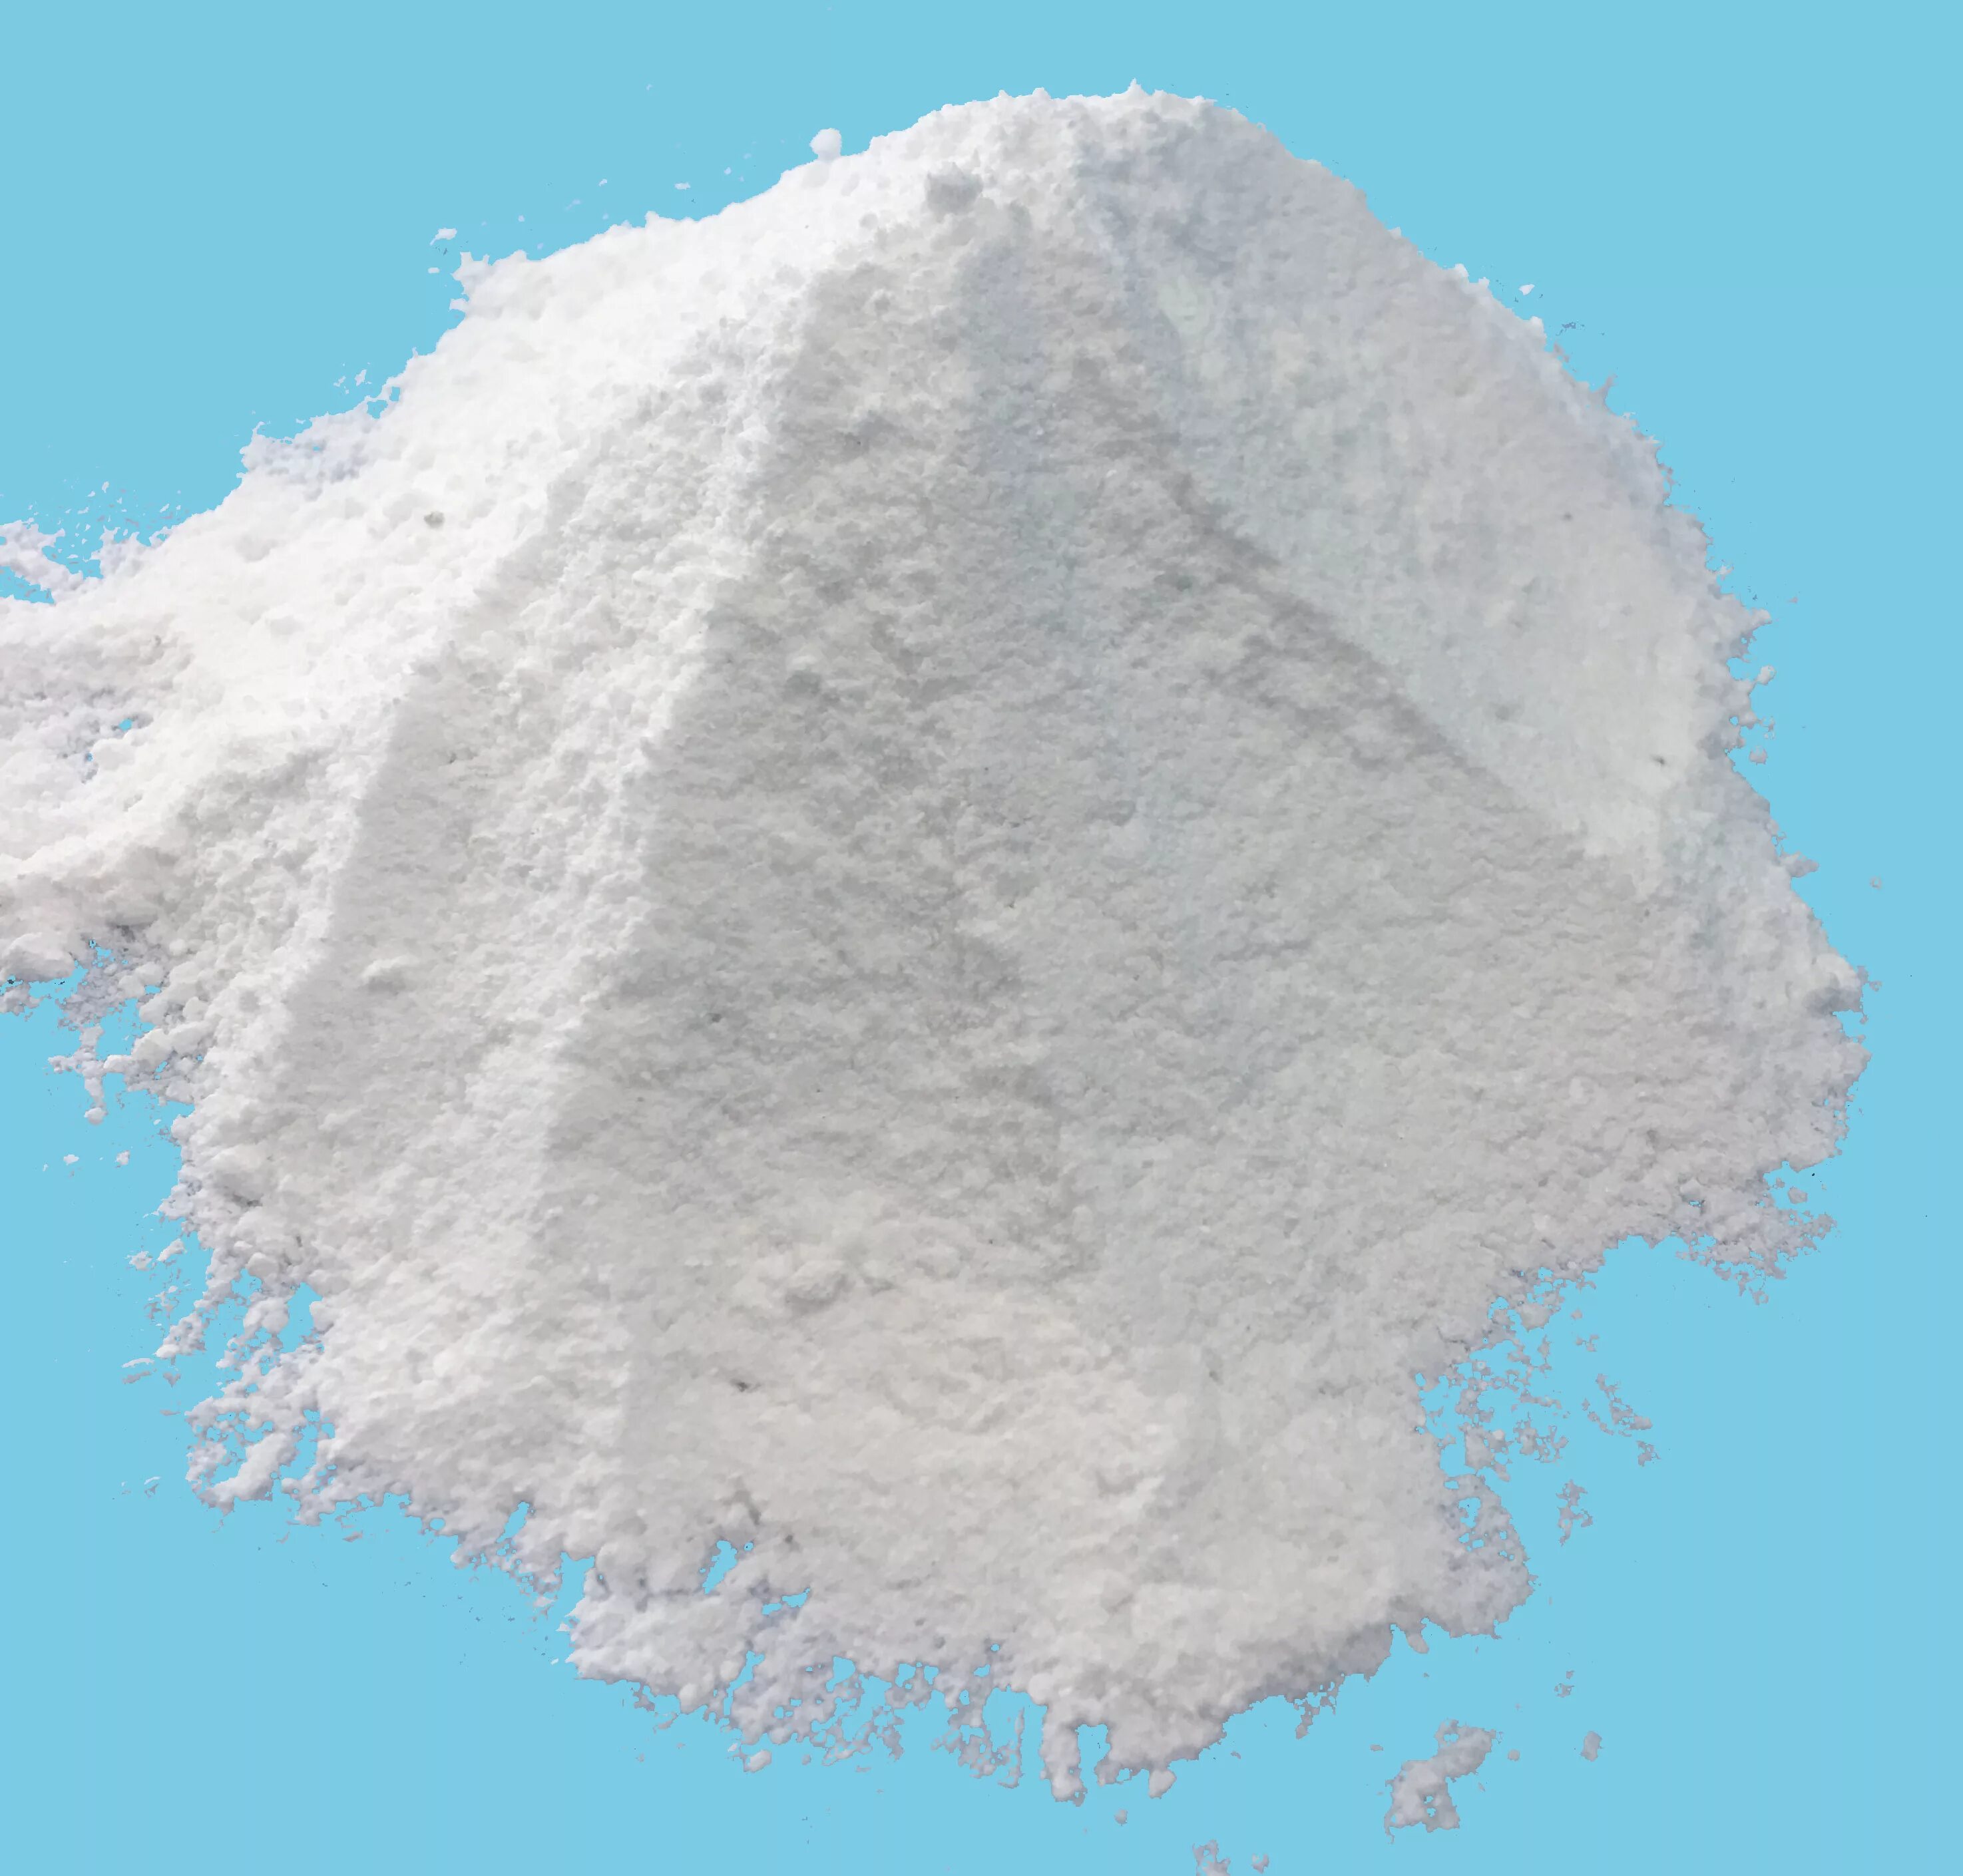 Calcium chloride Powder. Оксид кальция порошок. Хлорид натрия порошок. Calcium hydroxide.